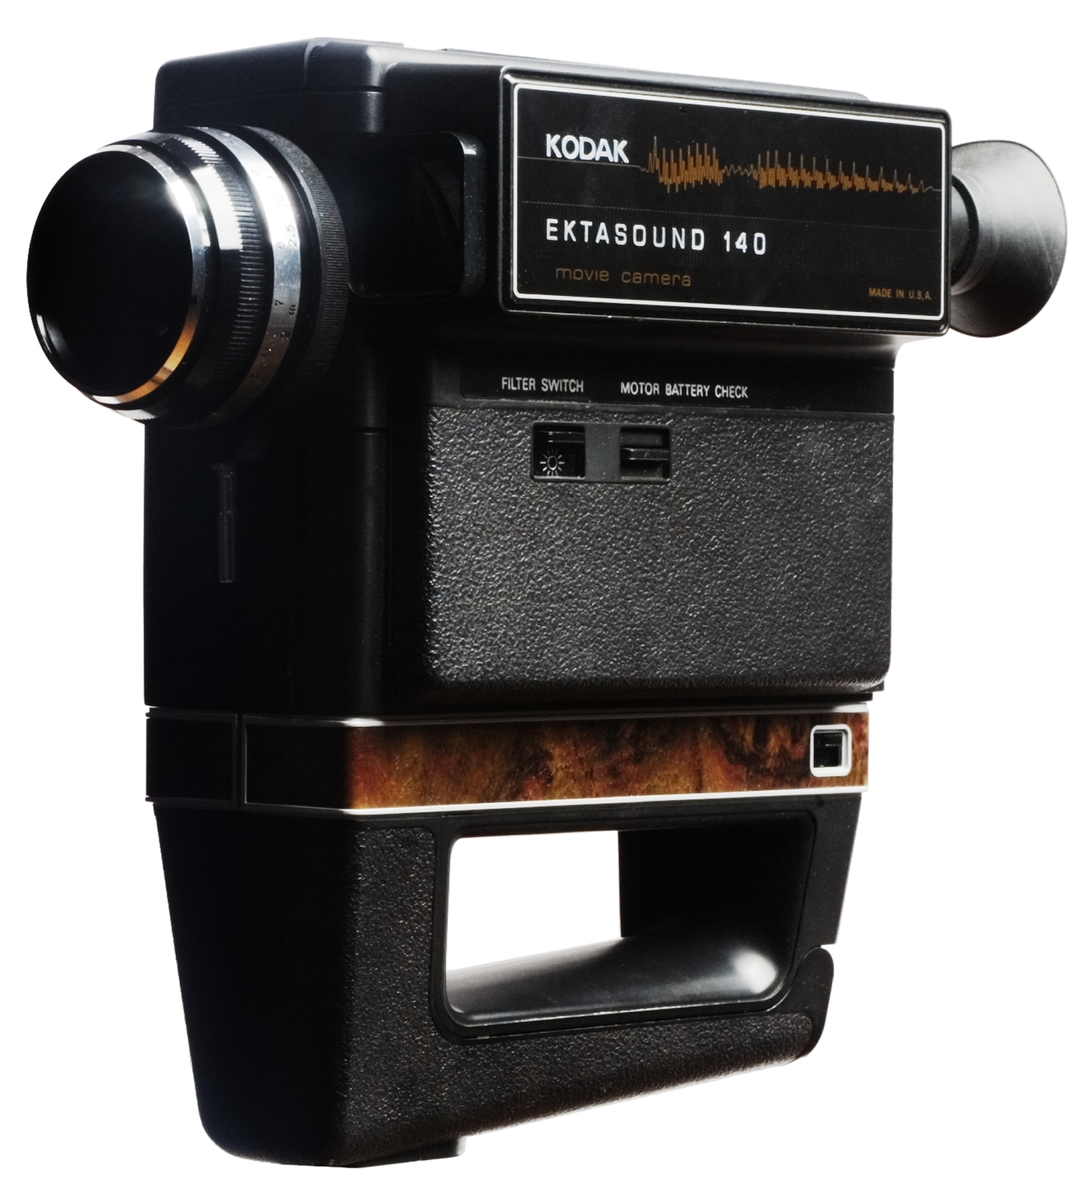 Ljudfilmkamera Super 8, Kodak Ektasound 140, med väska som innehåller mikrofon, stativ och handledsrem. 200 mm objektiv 9-21 mm. Kodak Ektar 200 mm. Inbyggd exponeringsmätare som automatiskt ställer in rätt bländare. Den inbyggda ljudupptagningen justeras också automatiskt.
Tillbehör: Väska med mikrofon, stativ och handledsrem.